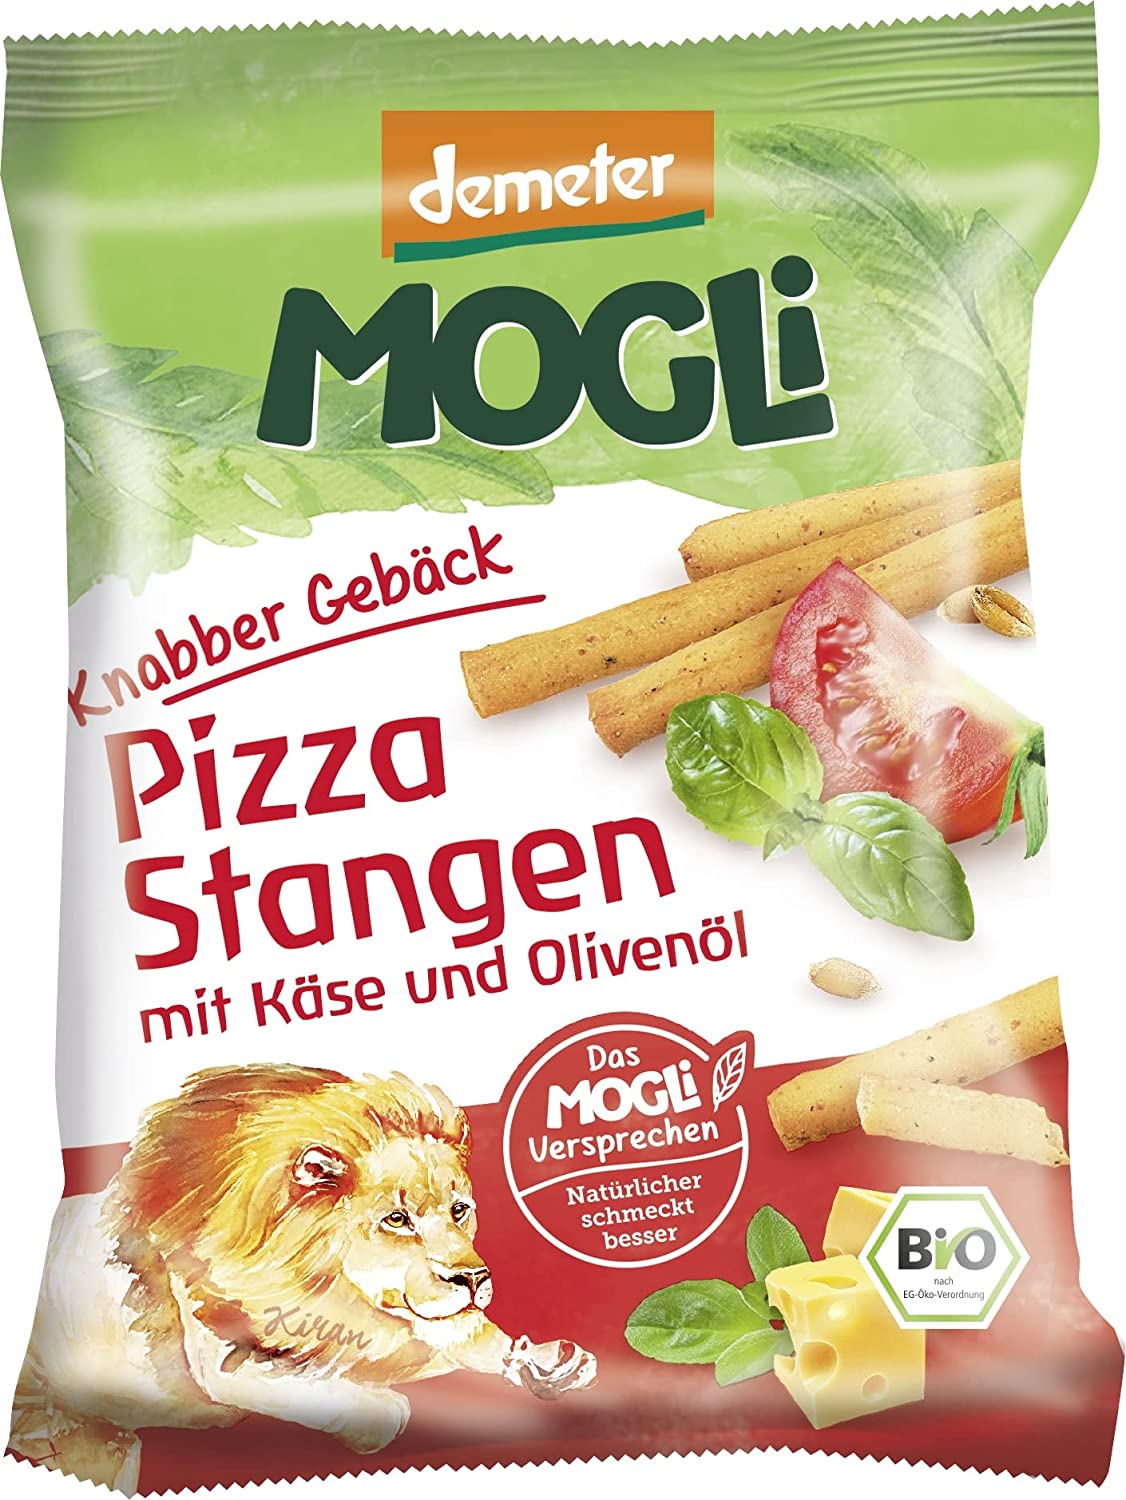 Demeter Mogli Pizza Stangen, 75g